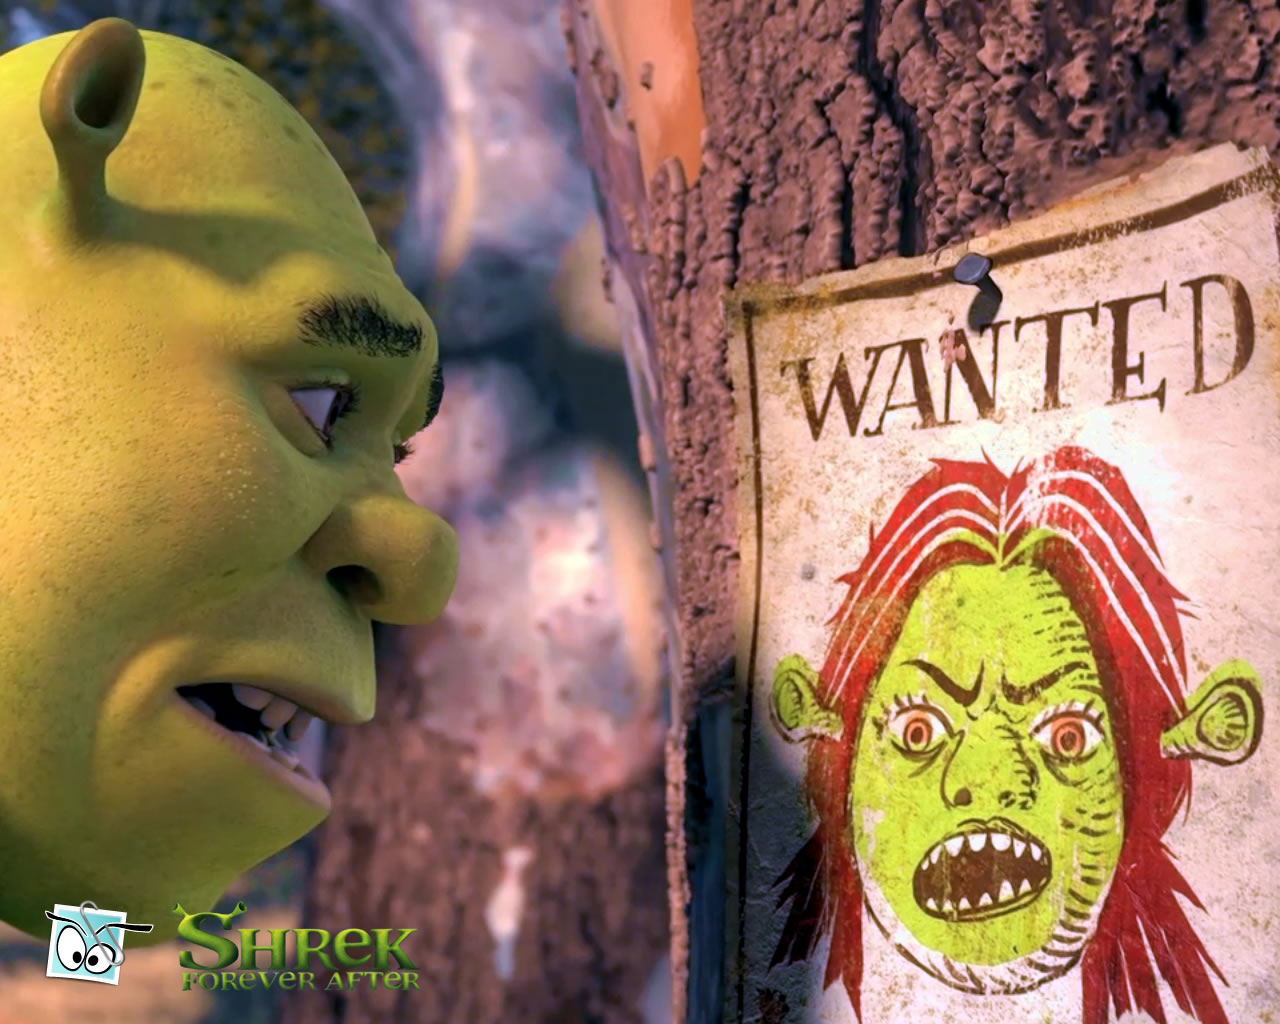 download wallpaper: Shrek 4 wanted wallpaper